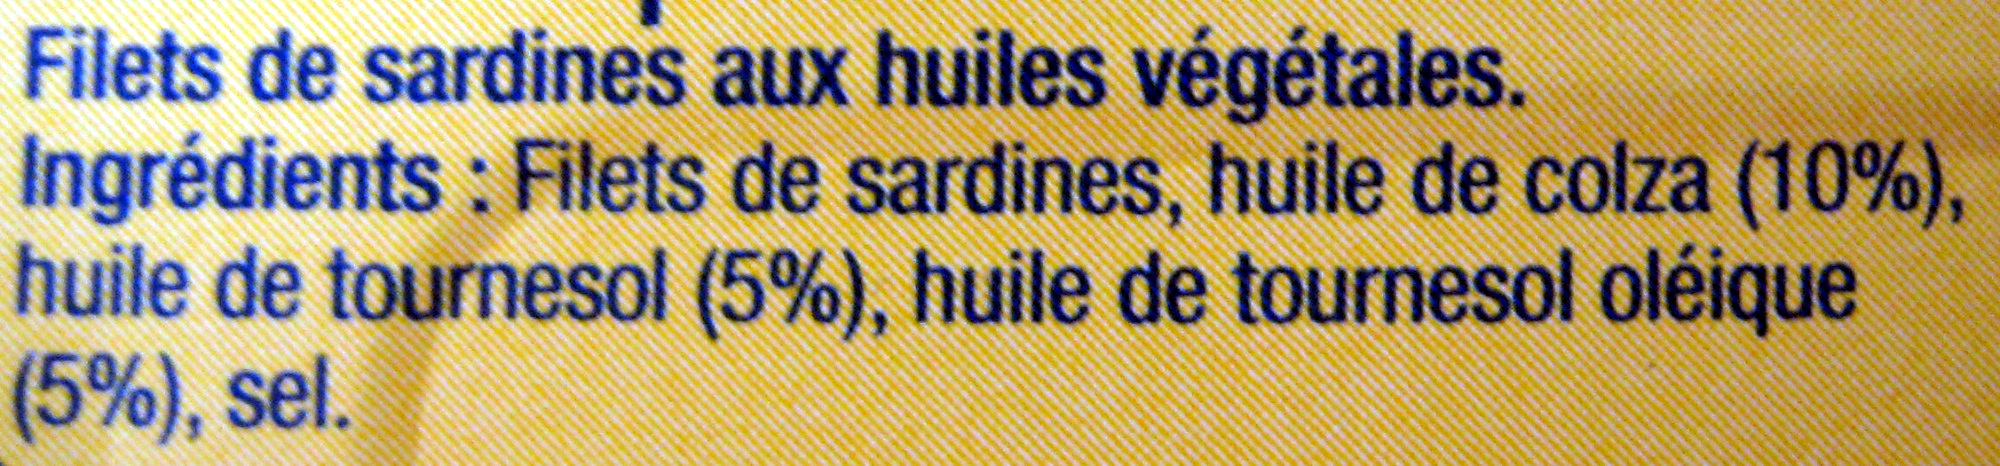 Filets de sardines aux 3 huiles végétales - Ingredients - fr